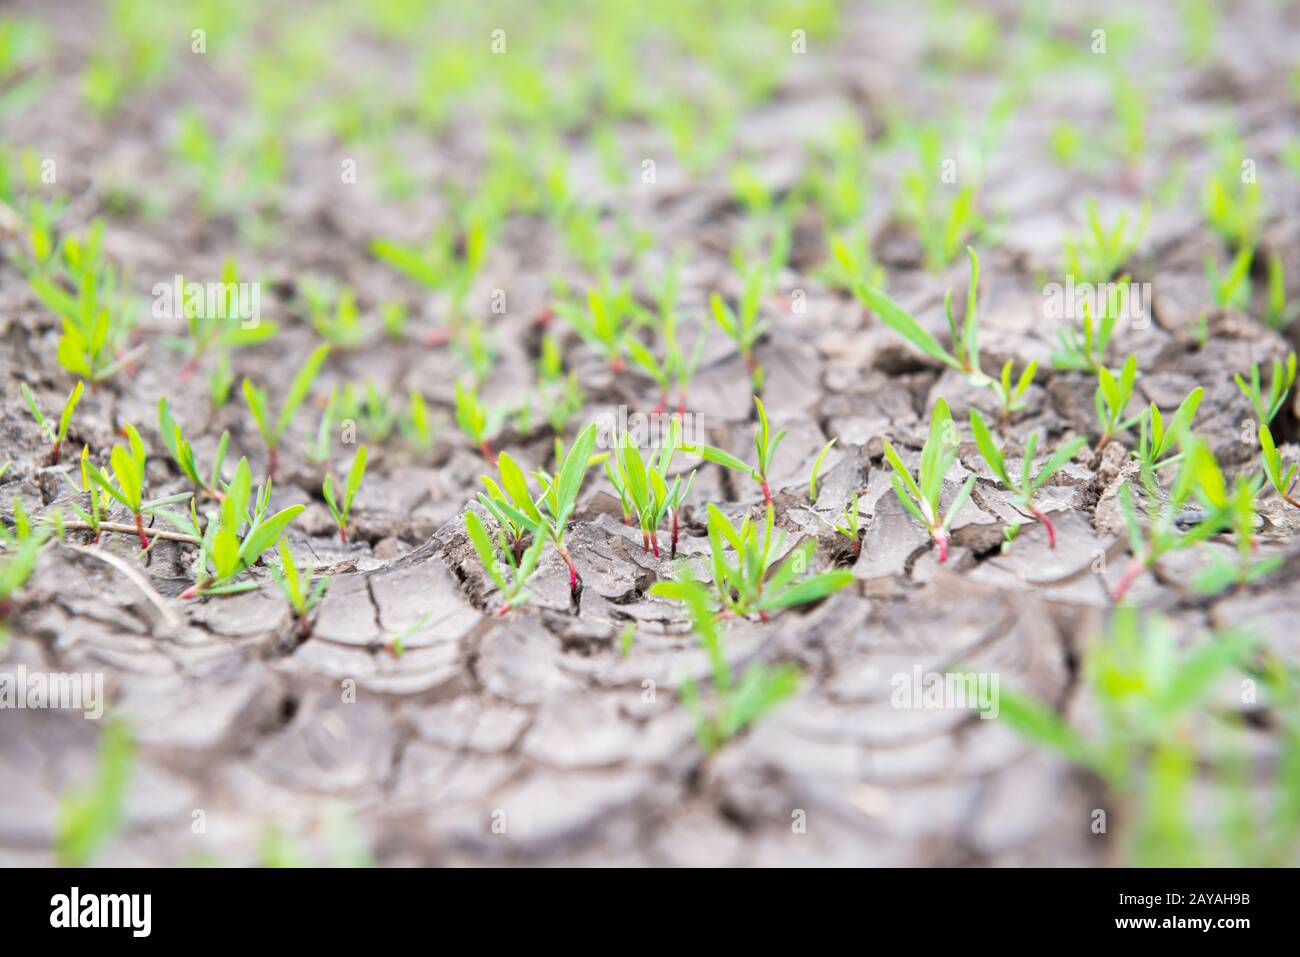 Tierra seca con plantas verdes. Foto de stock